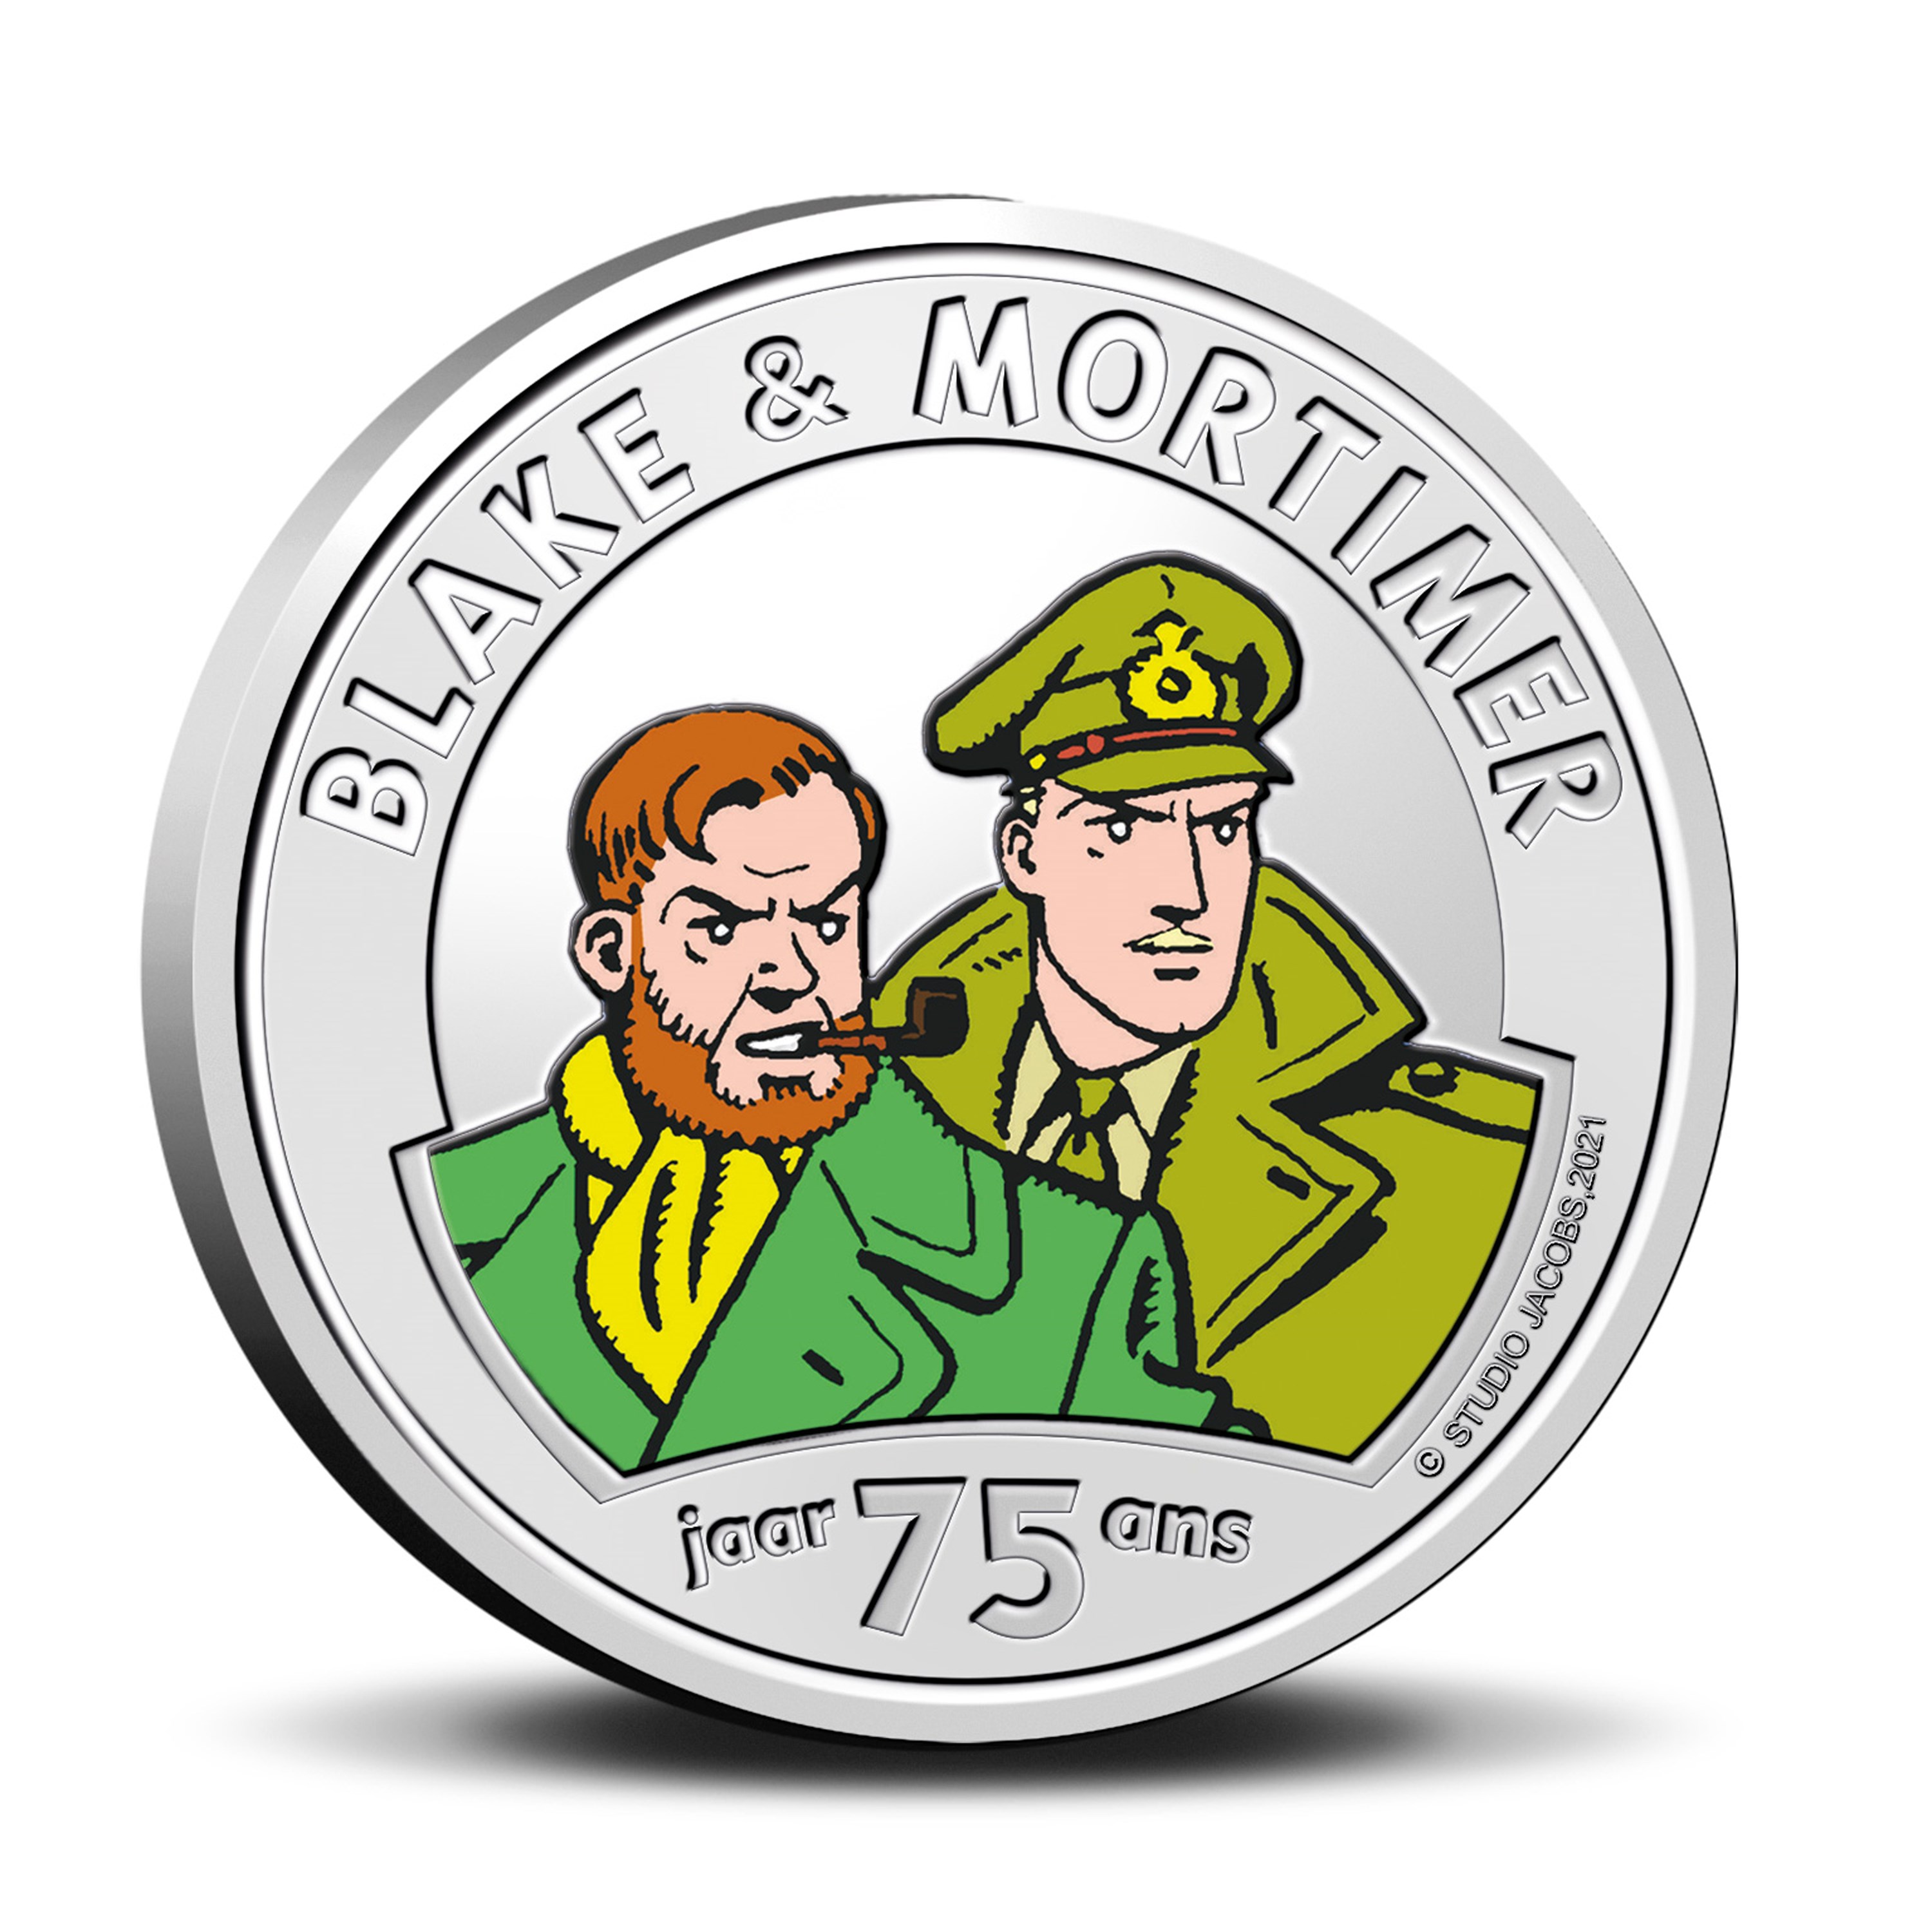 سکه یادبود بلیک و مورتیمر - رنگی